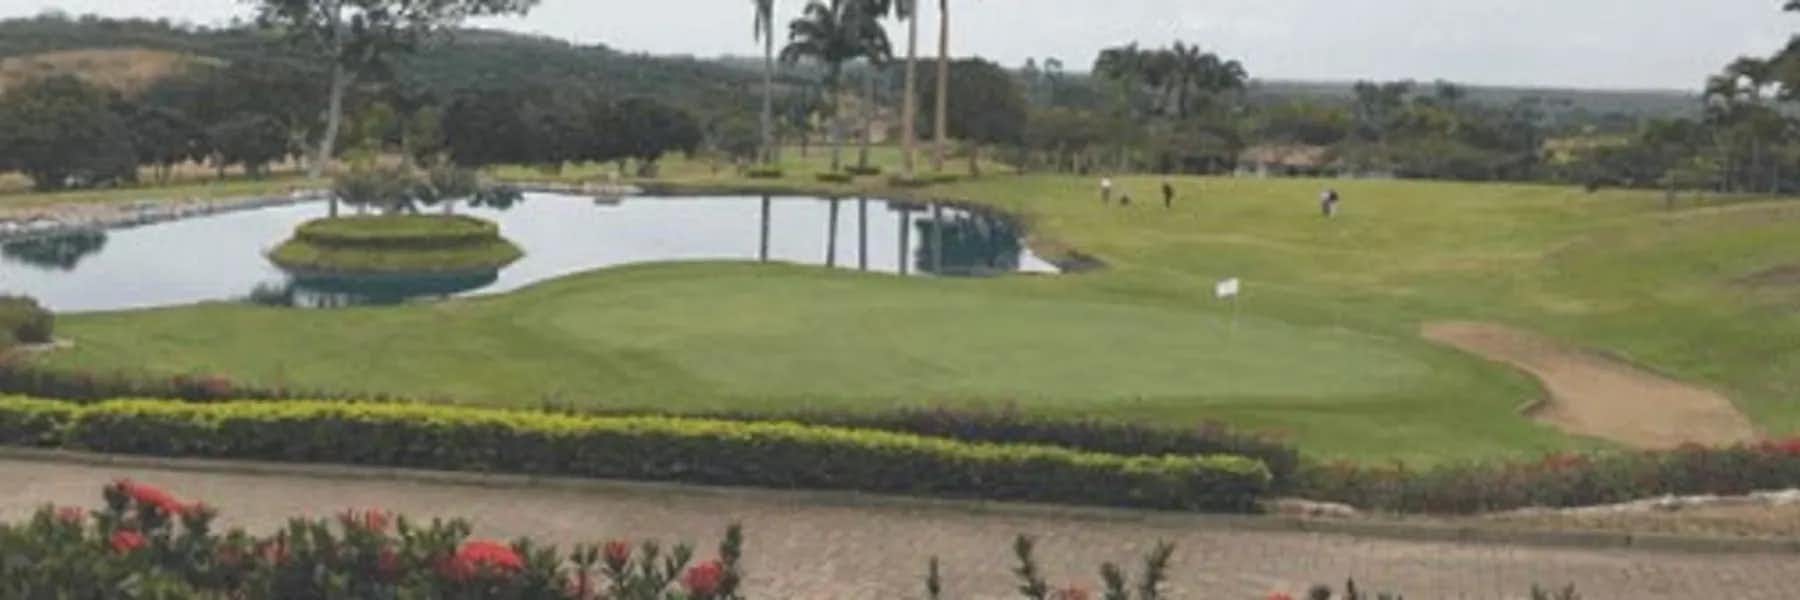 Golf Courses in Ecuador